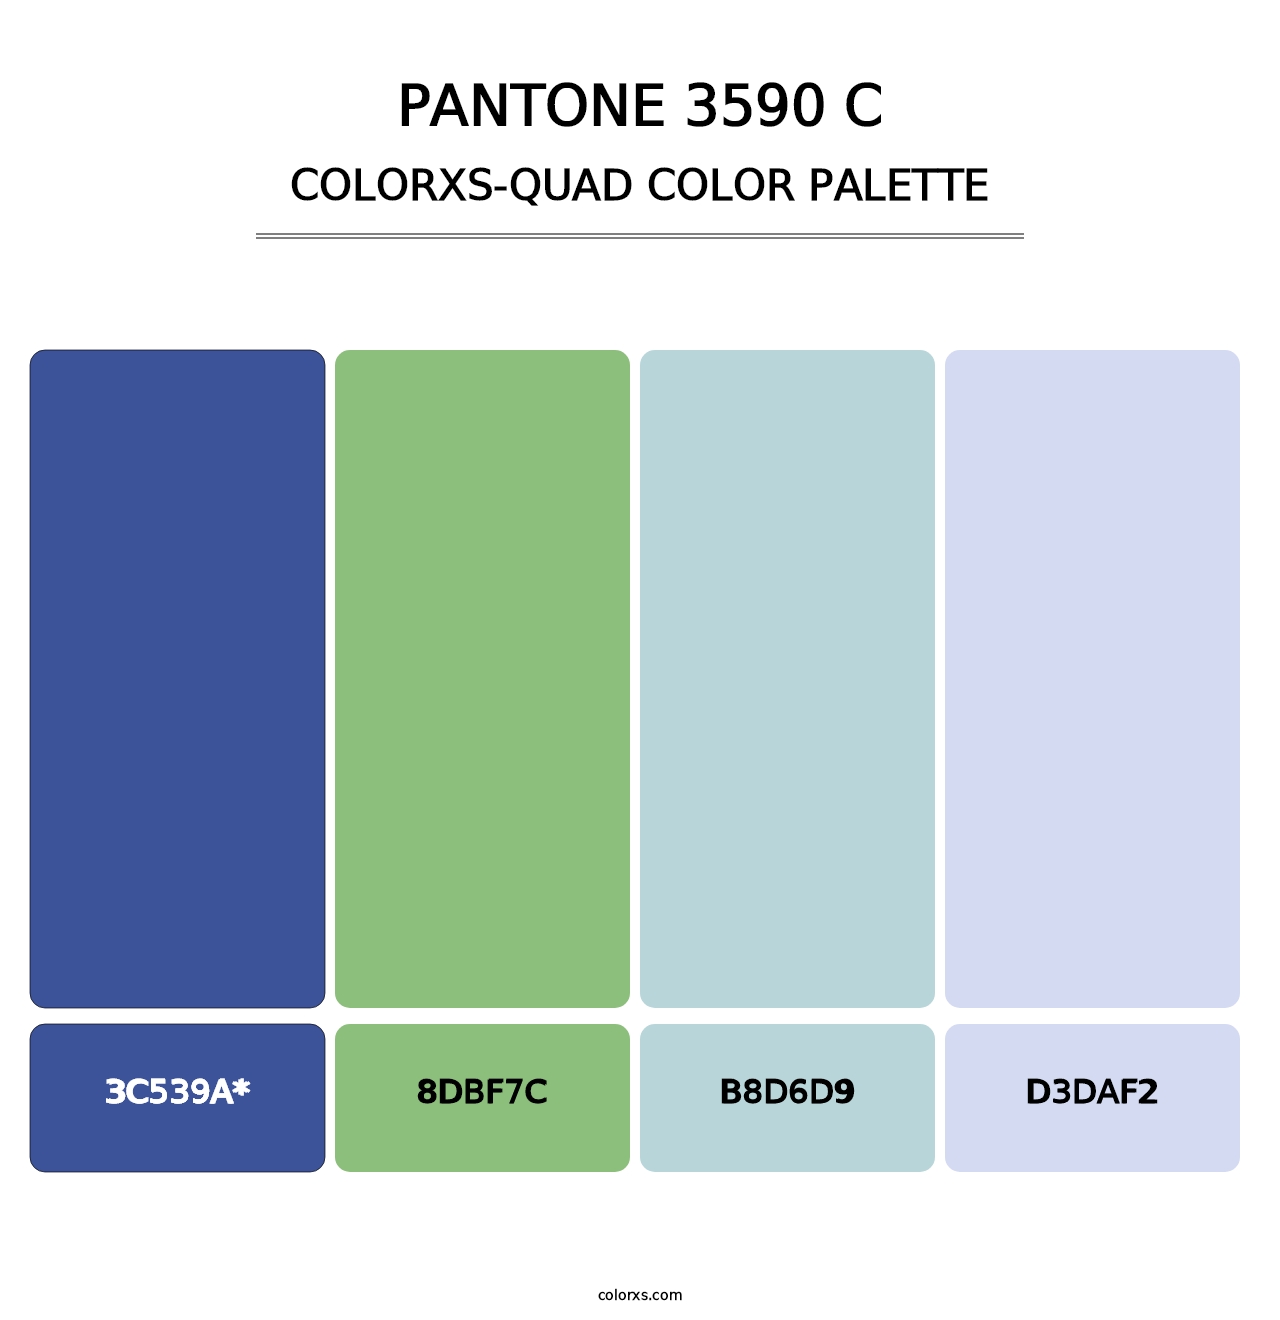 PANTONE 3590 C - Colorxs Quad Palette